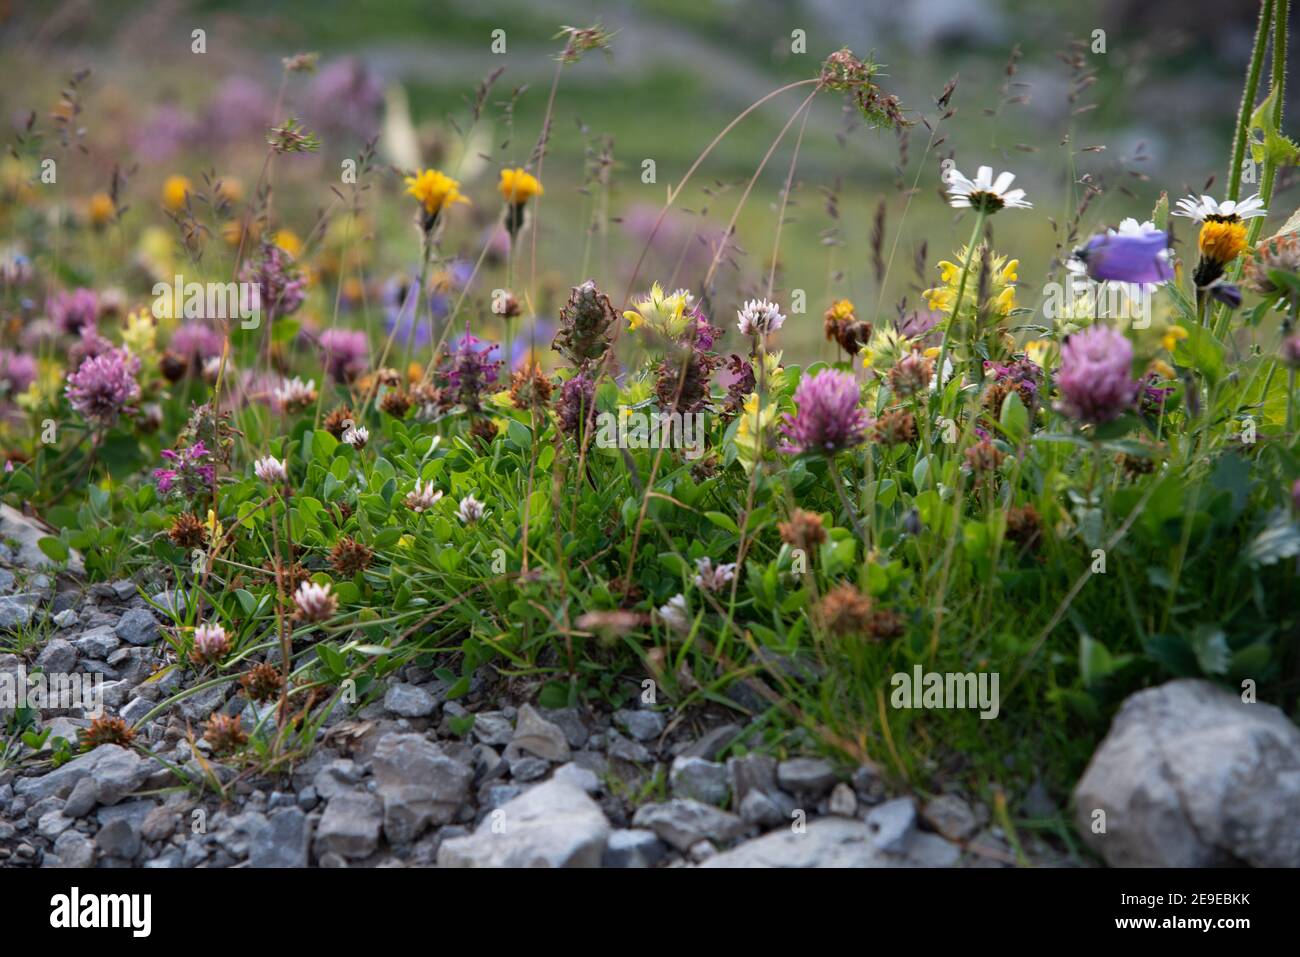 Gros plan de plantes et de fleurs épineuses isolées dans la nature sur un fond abstrait Banque D'Images